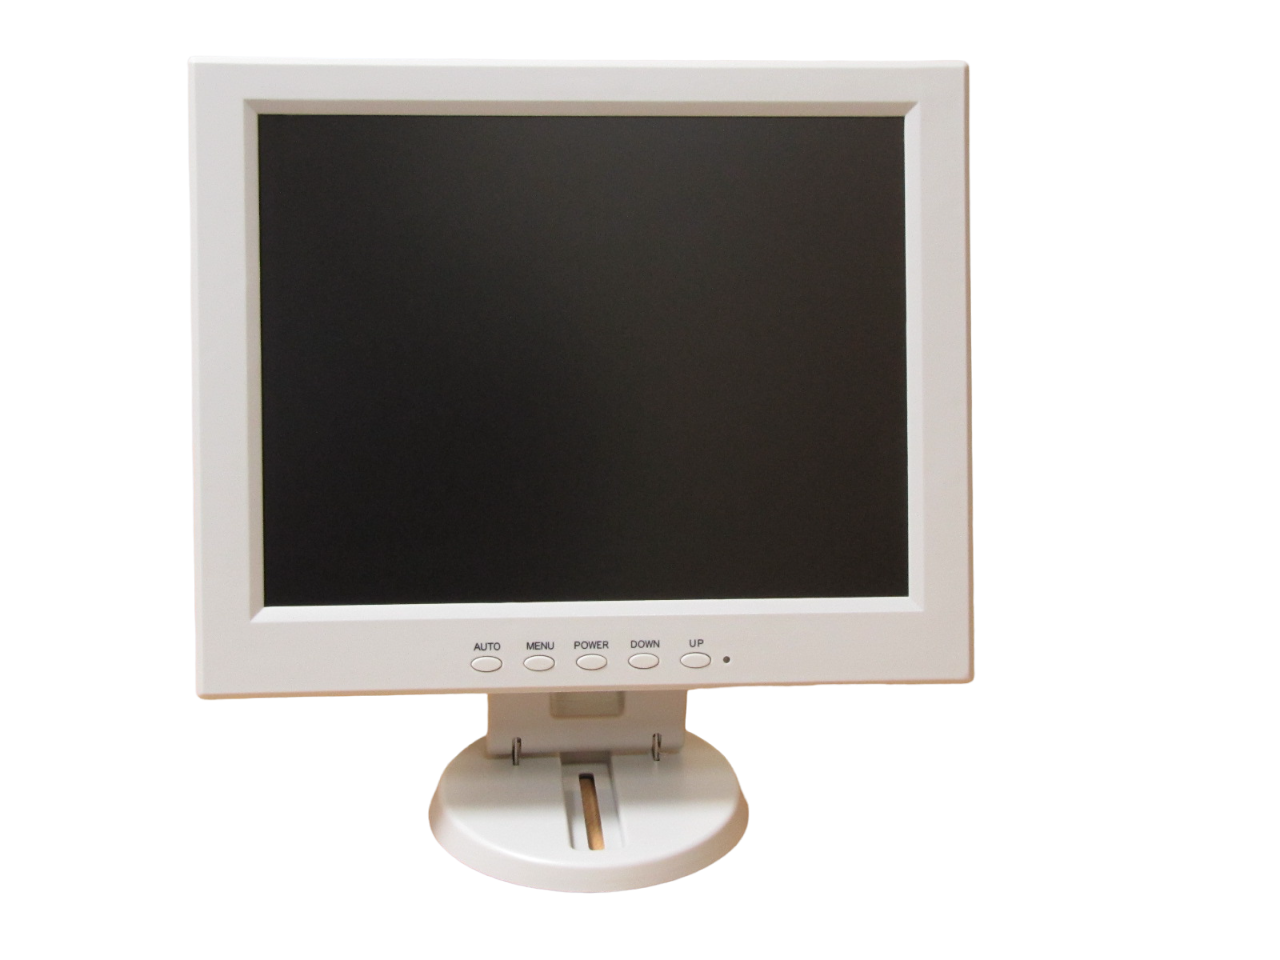 POS-монитор OL-N1201, 12", LED, 800x600px, яркость кд/м 350, VGA